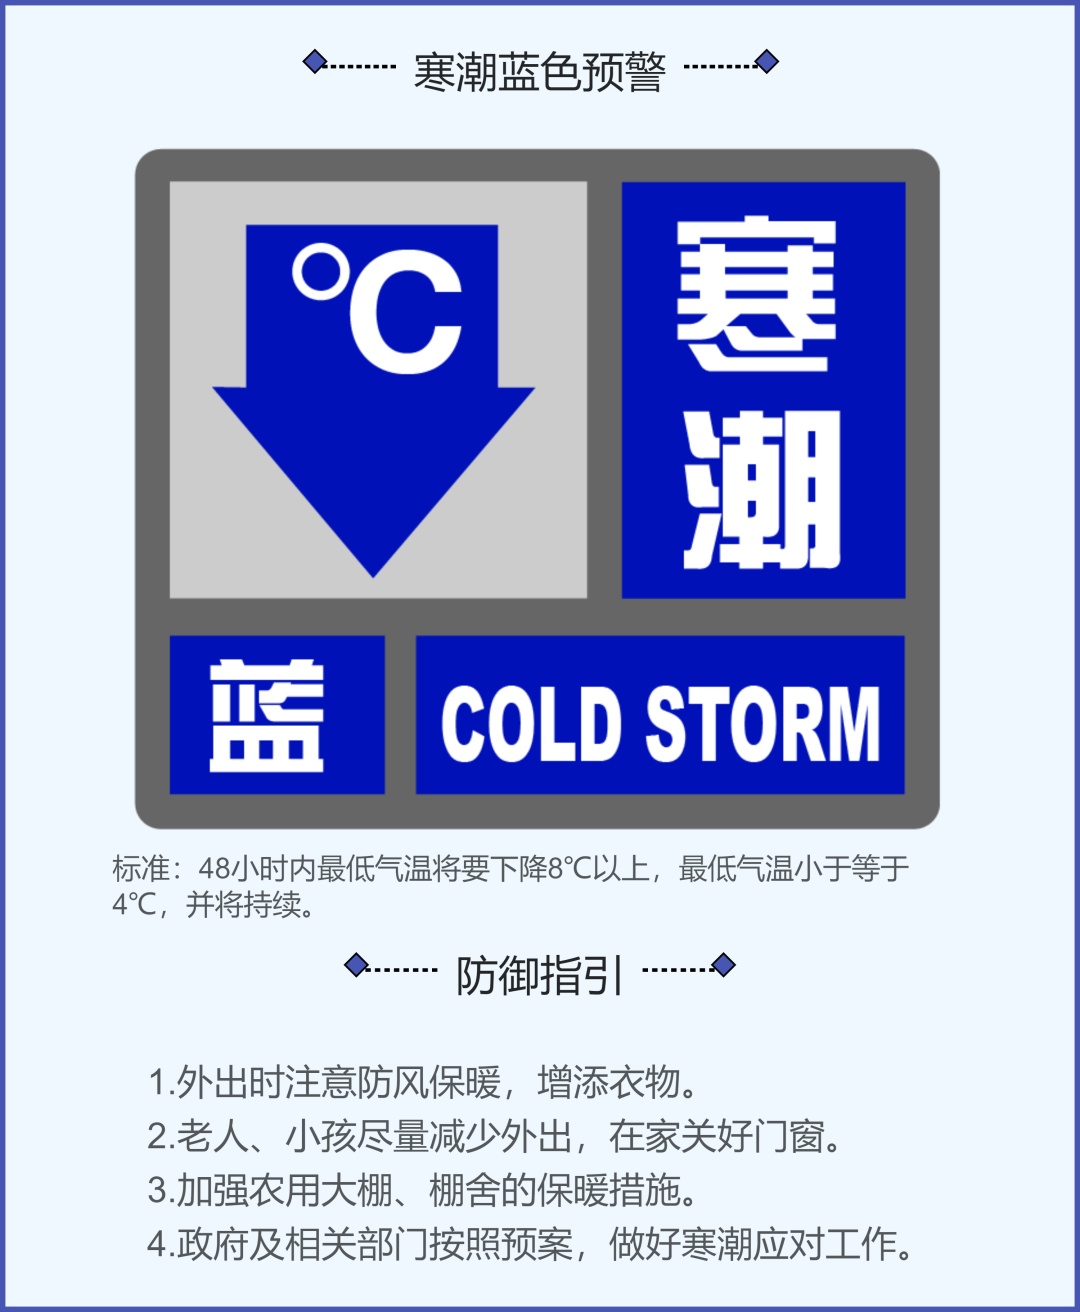 “假设全市普降暴雪，如何应对？” 上海今天组织了一场红色预警响应演练